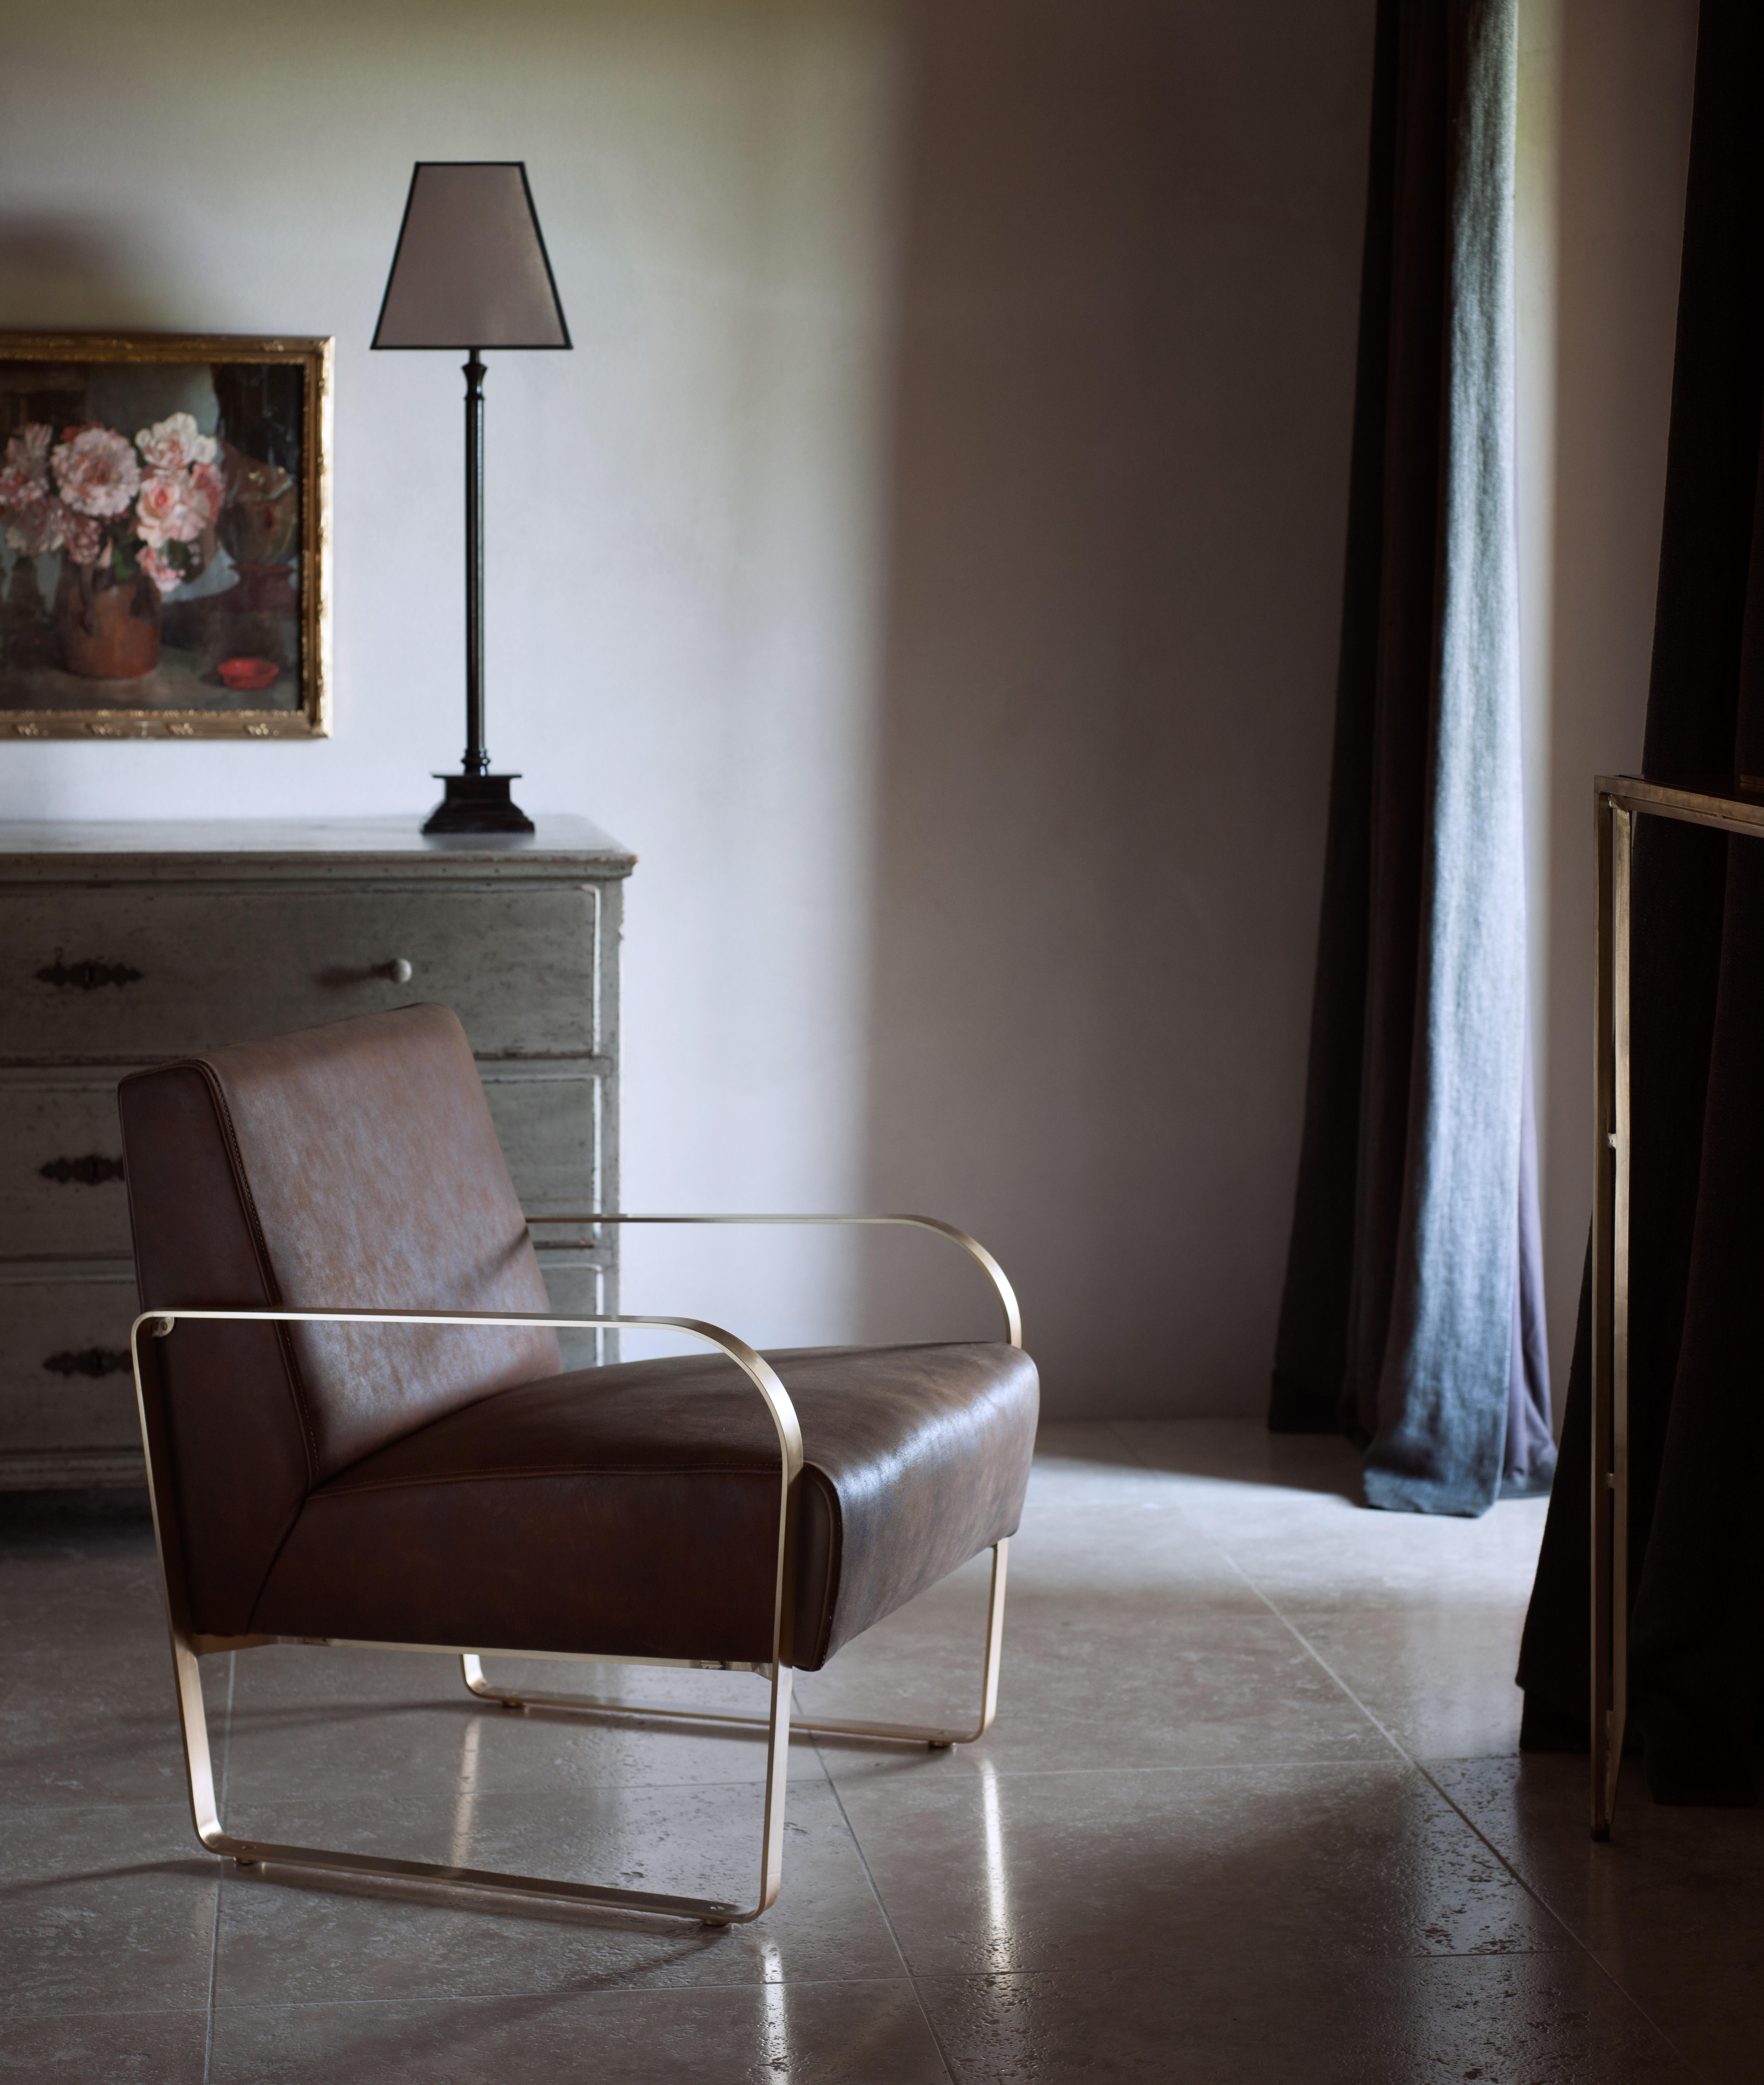 Le fauteuil en cuir - Une structure en laiton soutenant un siège en cuir superbement cousu à la main.
B.B. - J'adore le cuir italien qui contraste avec le cadre en laiton brossé Classic 1930.